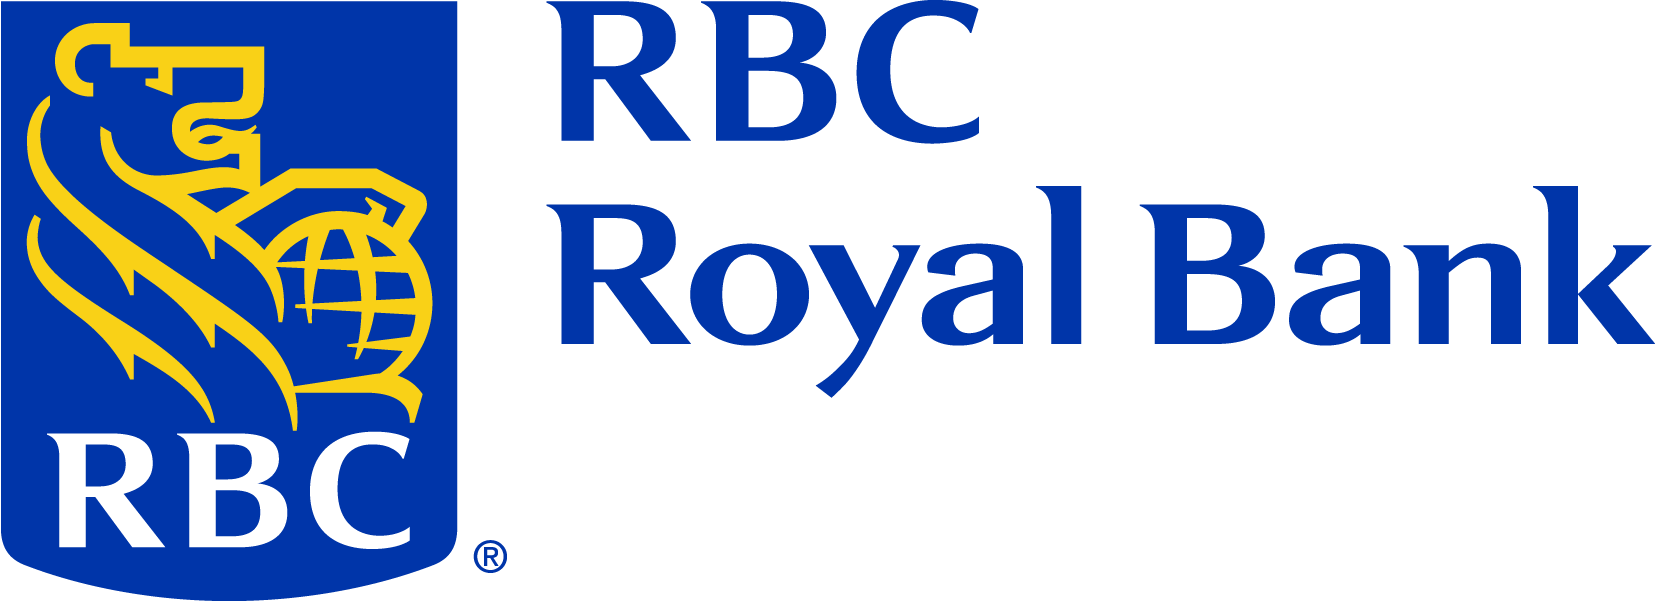 Логотип корпорации Royal Bank of Canada